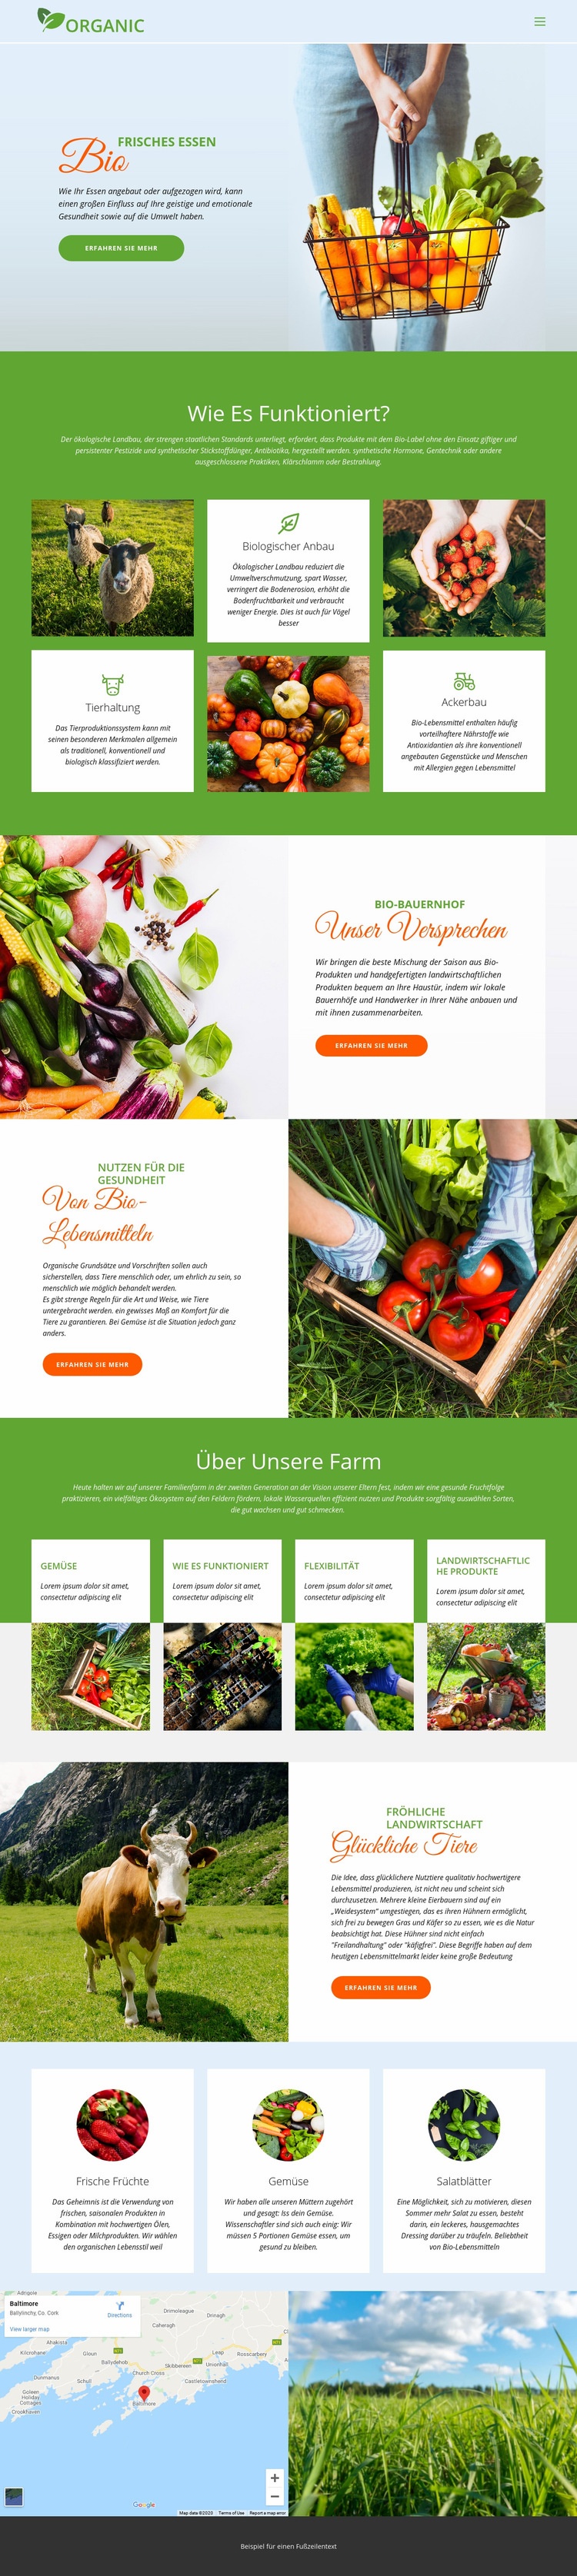 Essen Sie am besten Bio-Lebensmittel Website-Modell